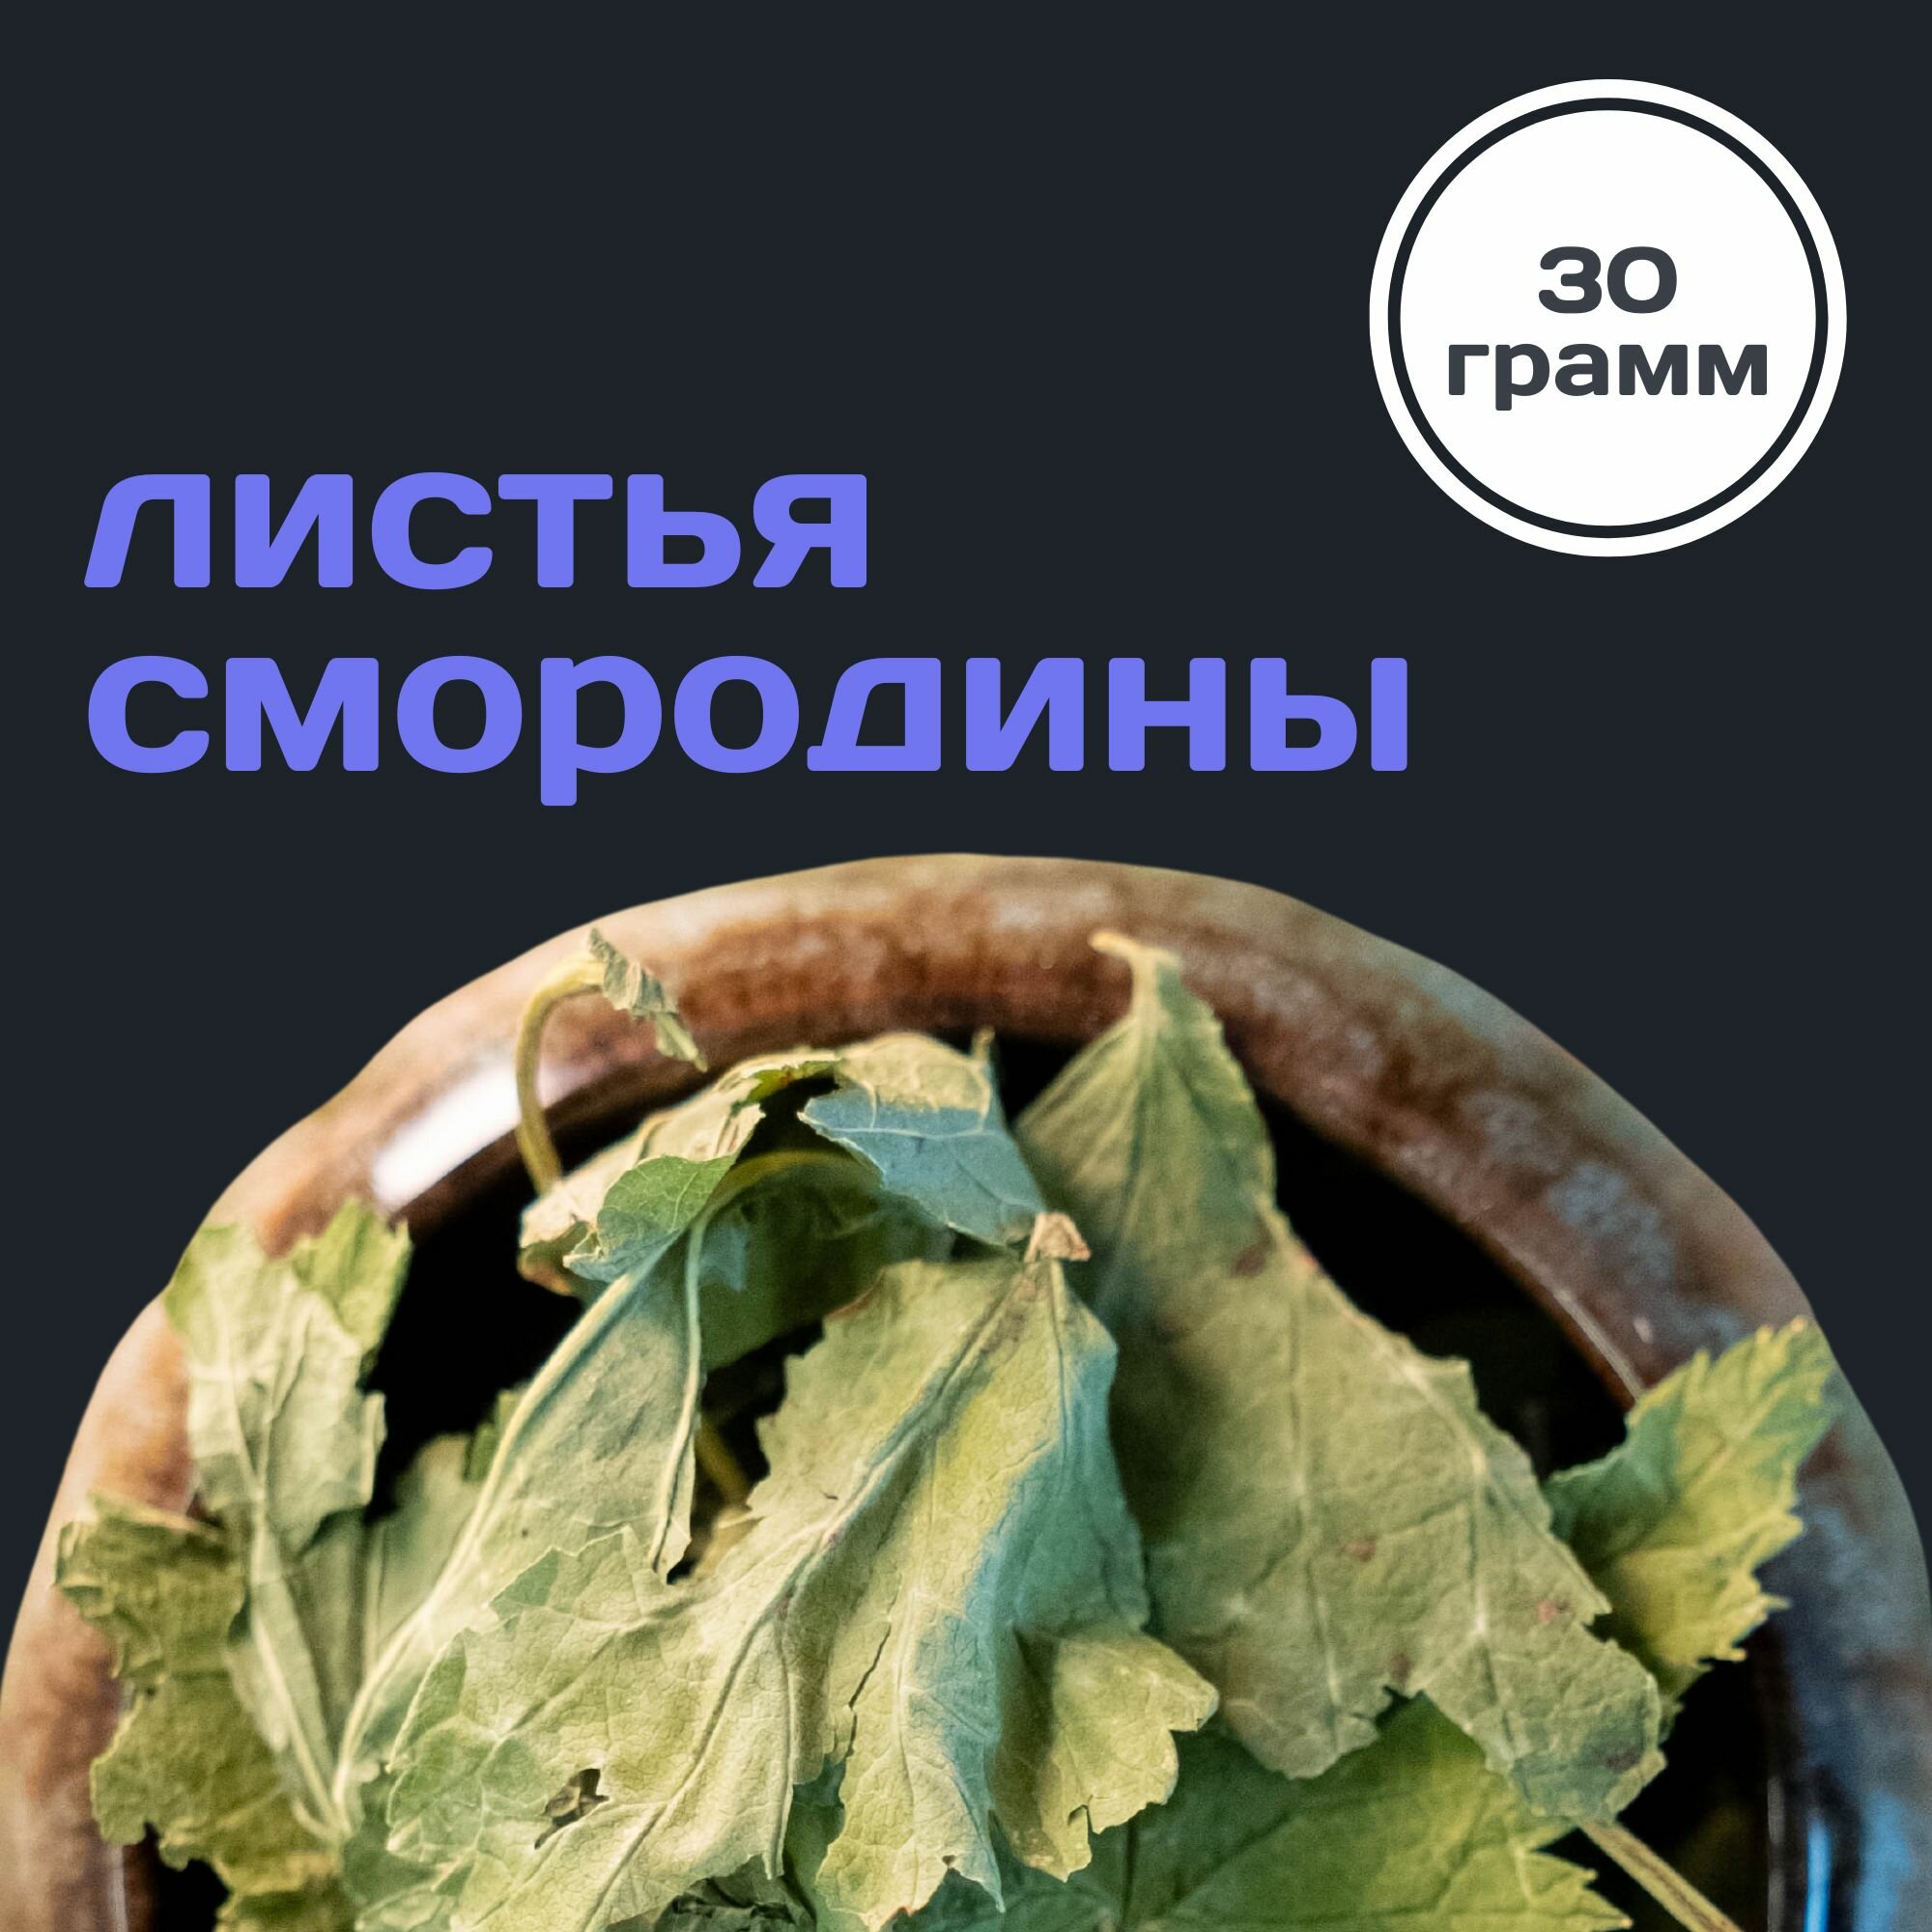 Лист смородины сушеный, 30 грамм, добавка для чая со смородиной / Россия, "Пряно Спело"